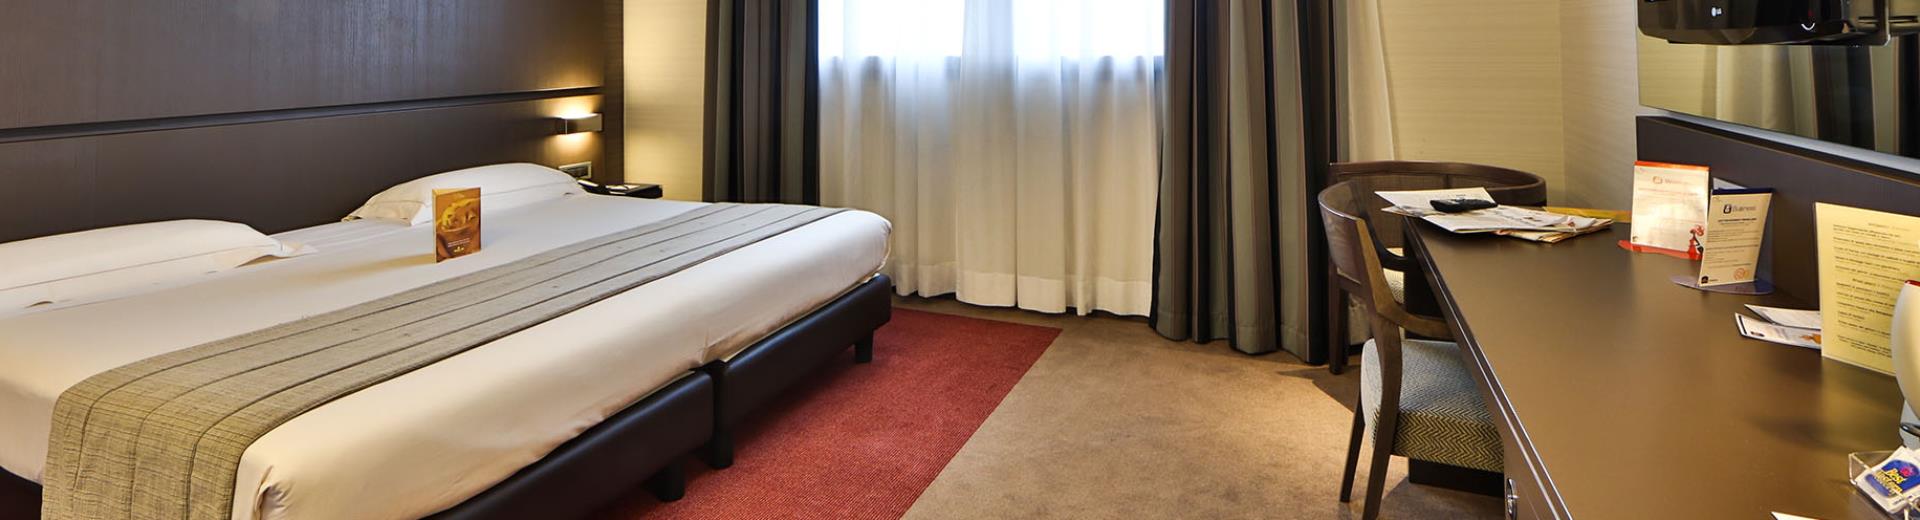 Scopri le tipologie di camere dotate di ogni comfort del nostro hotel 4 stelle a due passi da Milano.